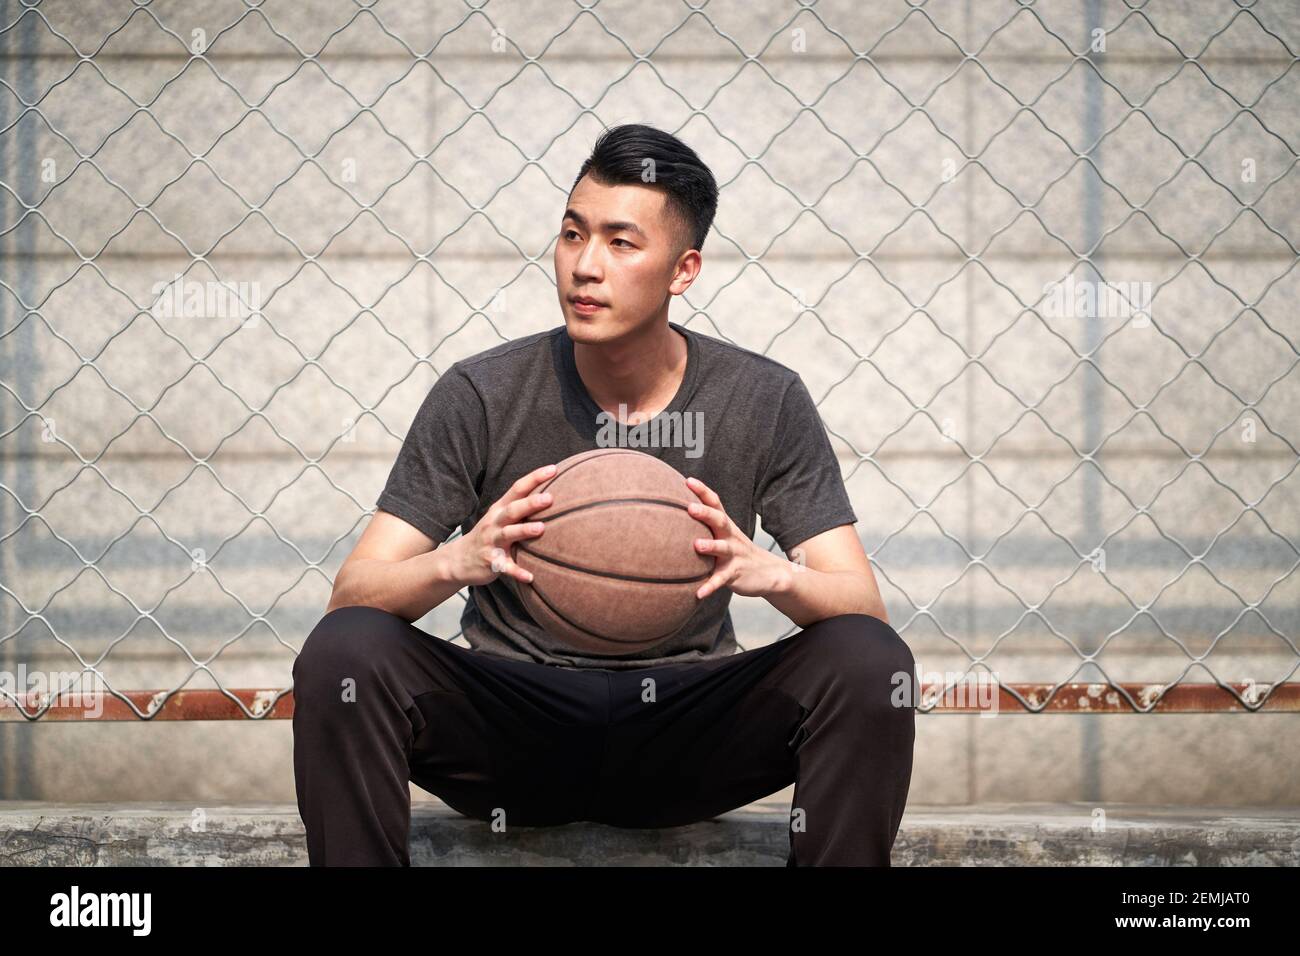 Junge asiatische Basketballspieler hält einen Ball sitzen bei ruhen courtside Stockfoto